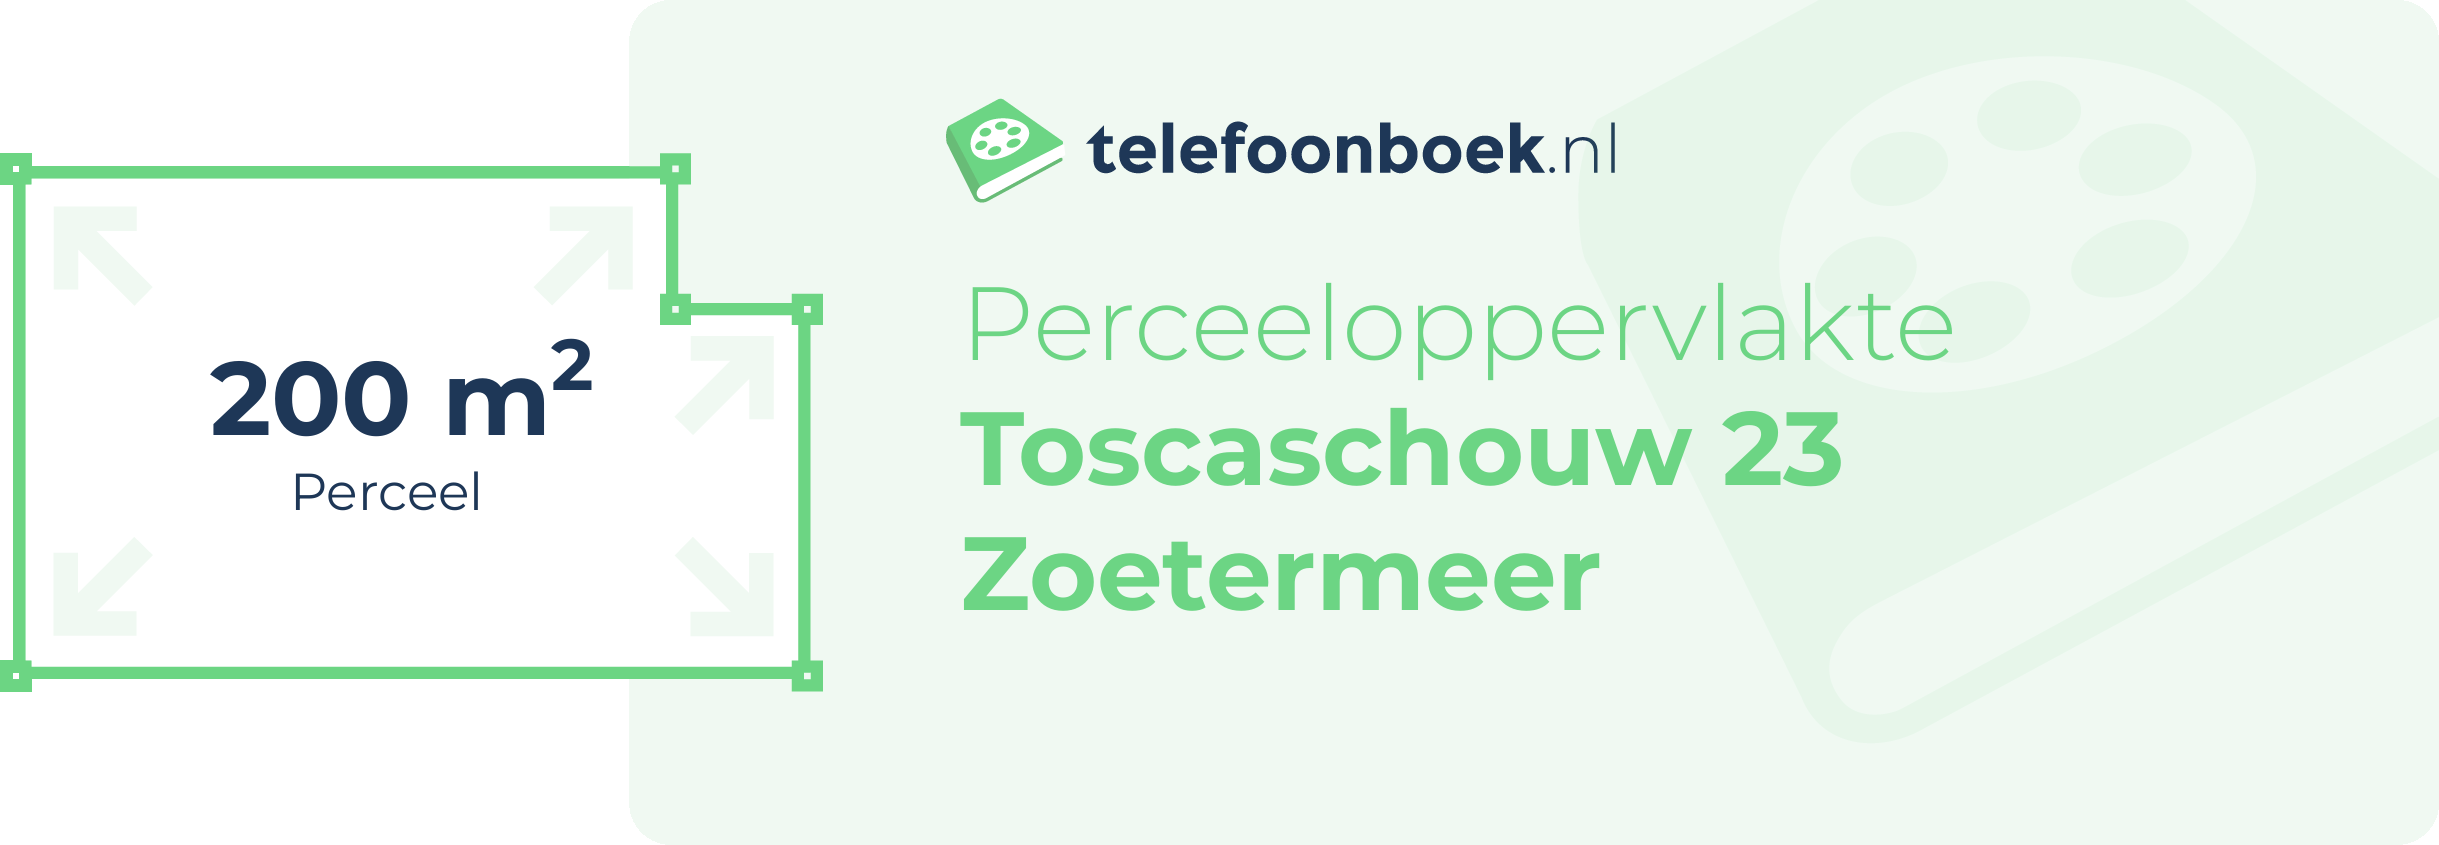 Perceeloppervlakte Toscaschouw 23 Zoetermeer